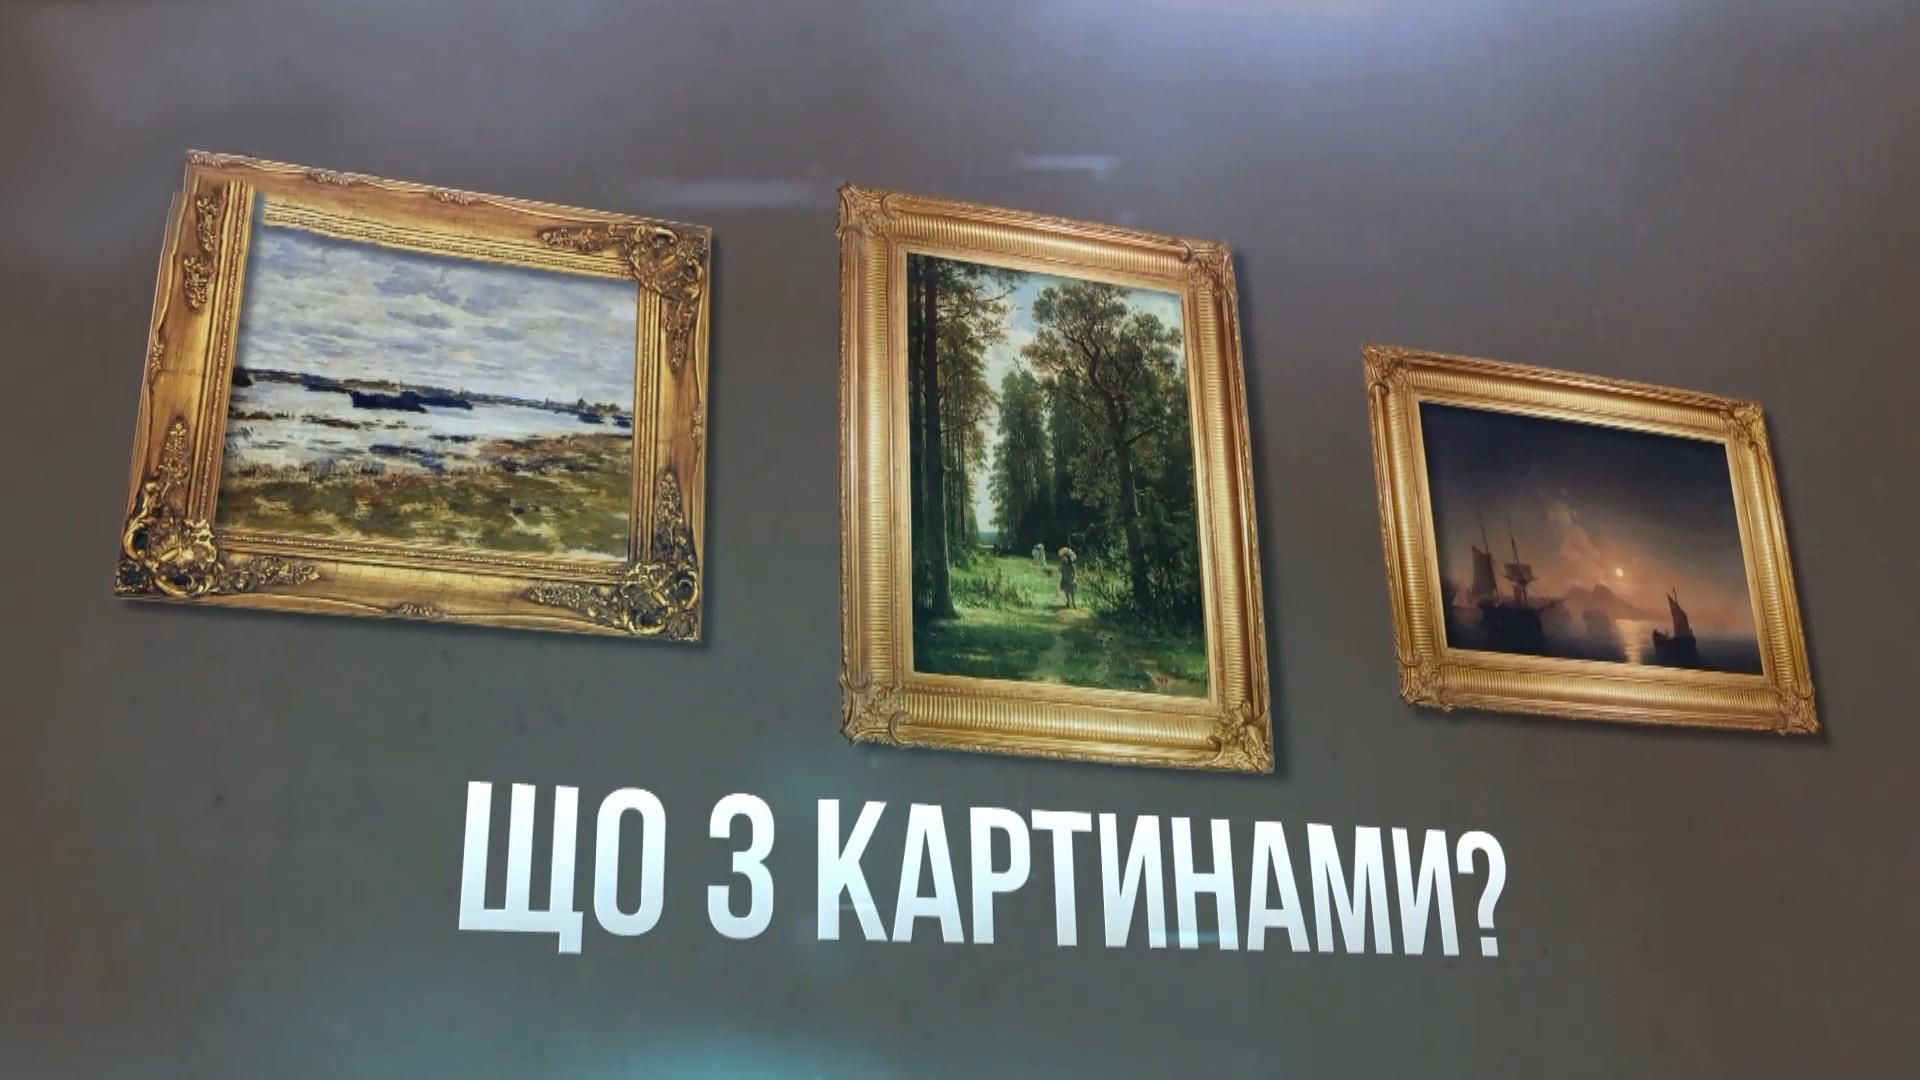 Як російським спецслужбам вдалось викрасти з Маріуполя картини за 1,5 мільйона доларів